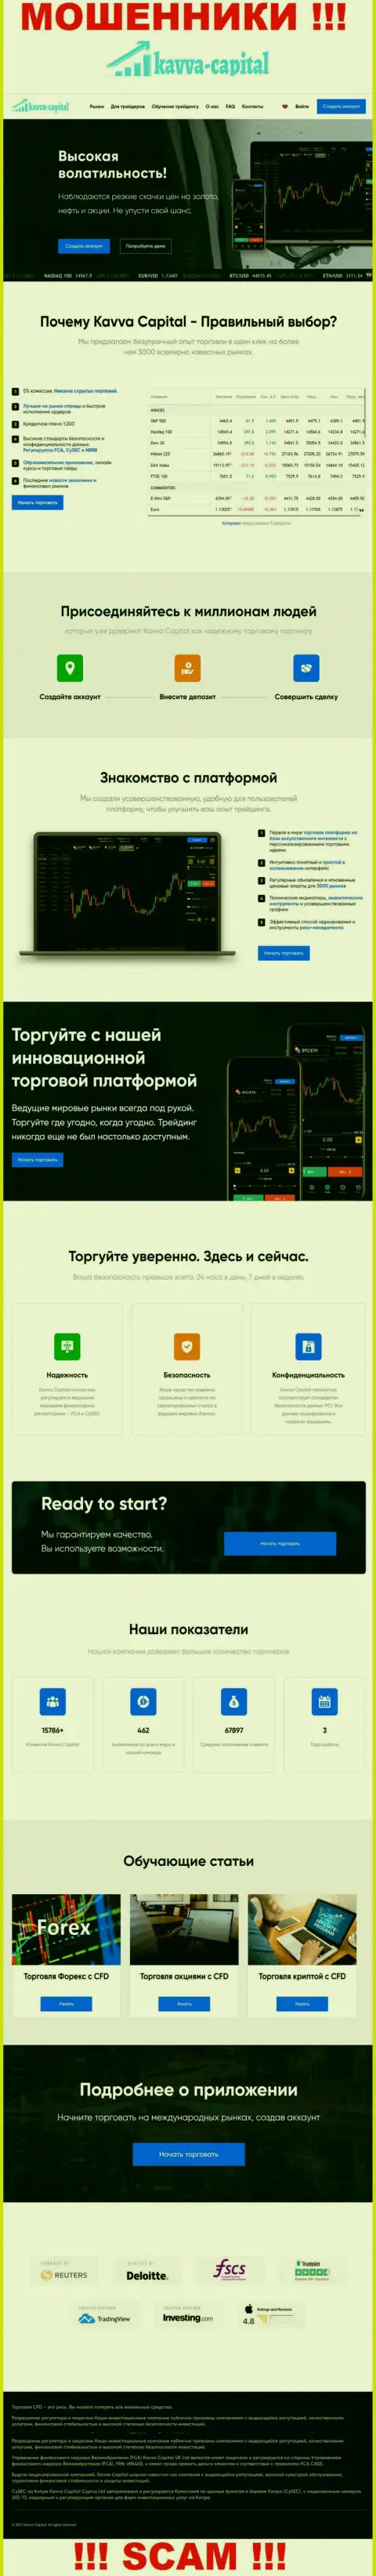 Официальный web-портал мошенников Kavva Capital Com, заполненный сведениями для доверчивых людей